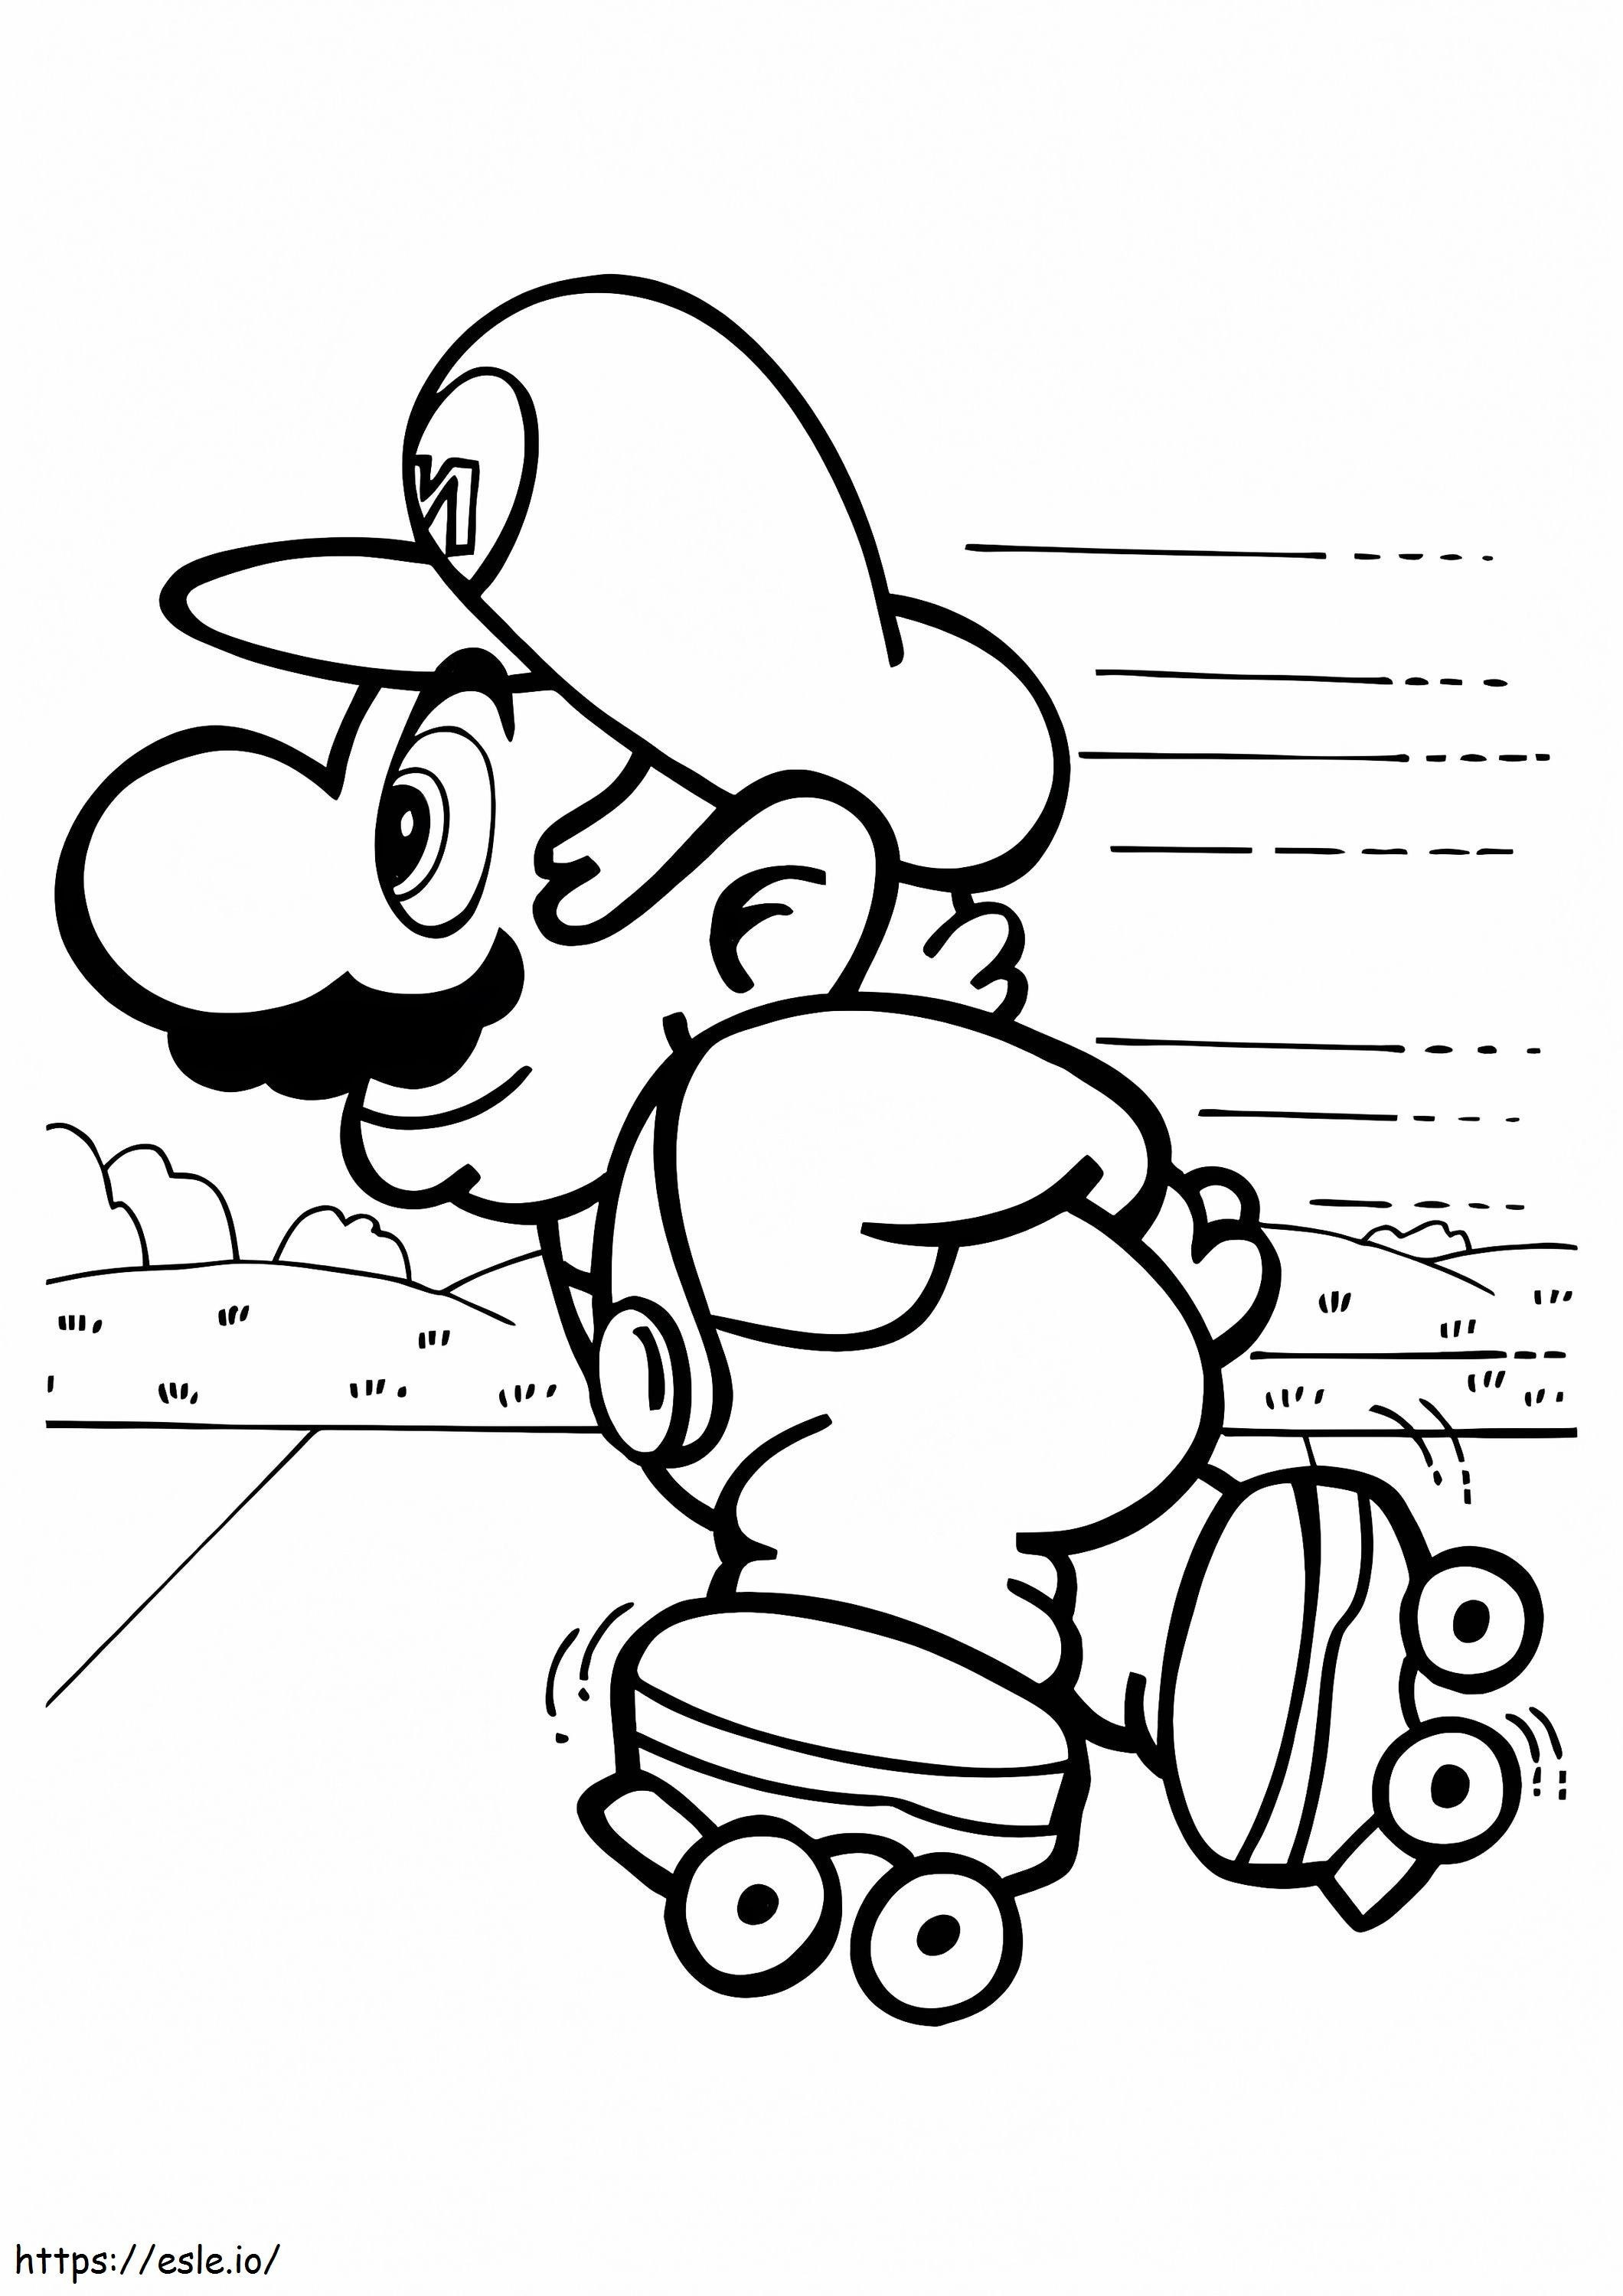 Mario pe patine cu rotile de colorat